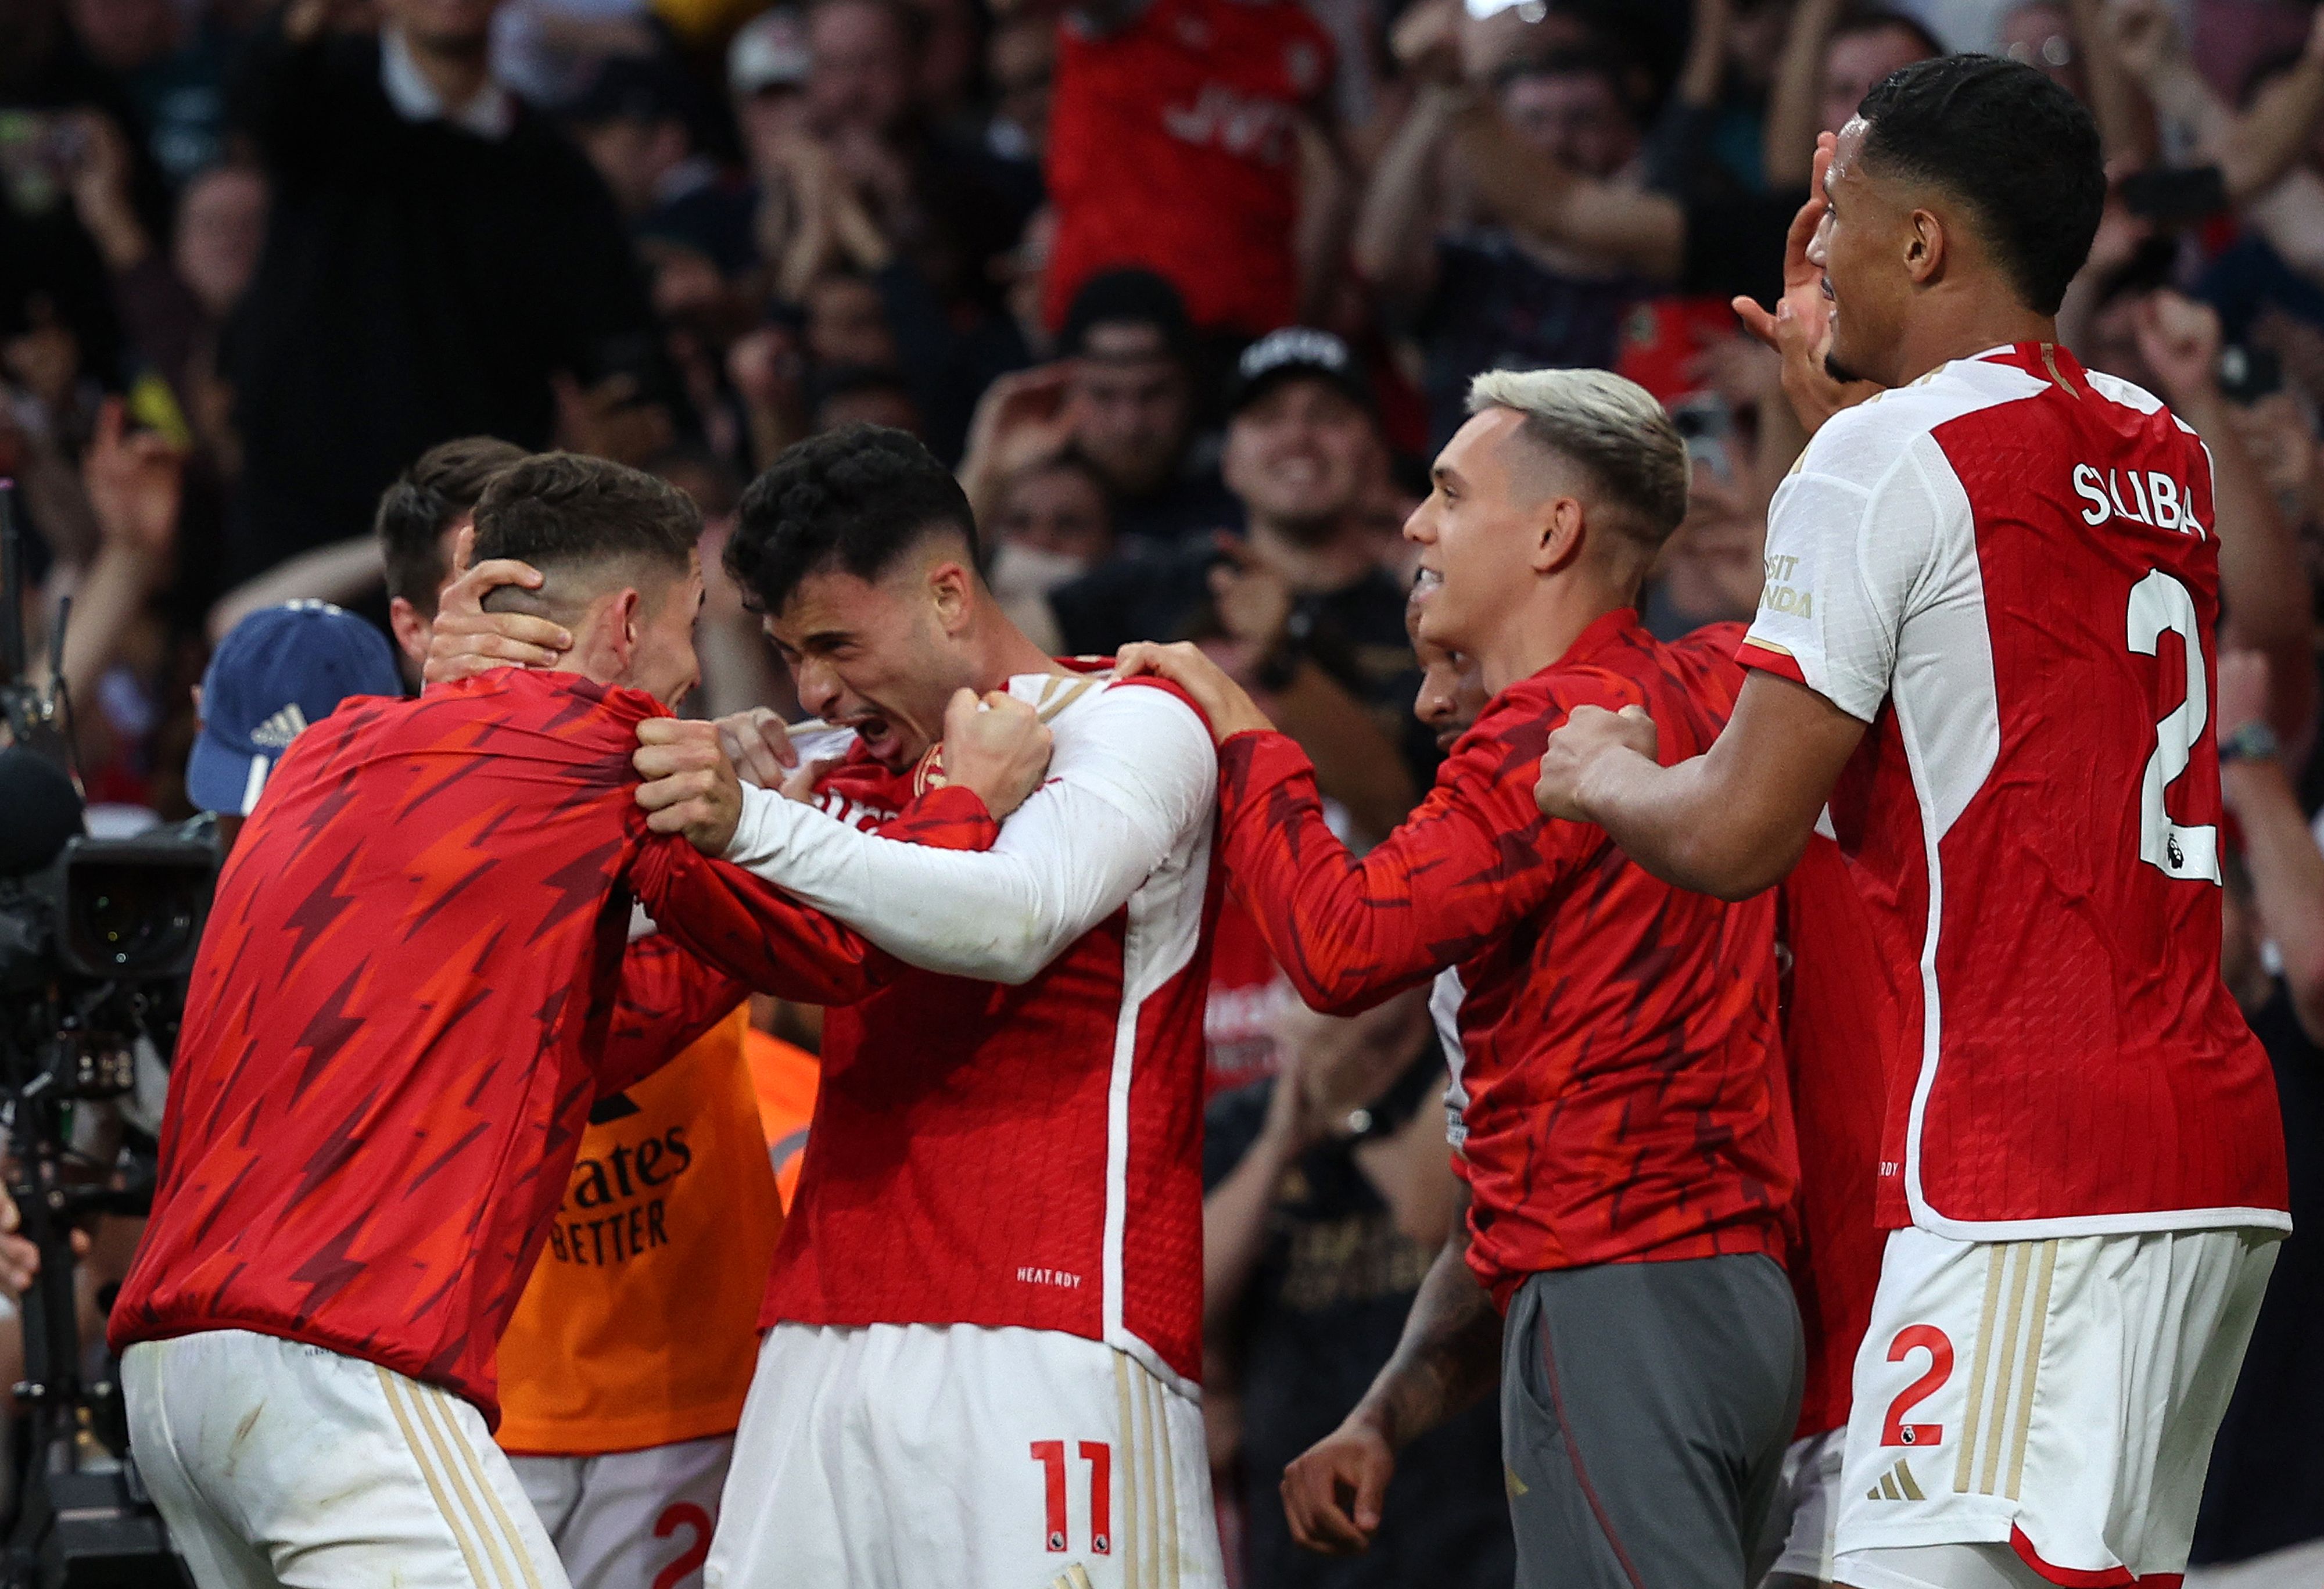 Coupe de Belgique : Anderlecht se qualifie face au Standard dans un Clasico  marqué par de nouveaux débordements en tribunes (VIDÉOS) - L'Avenir